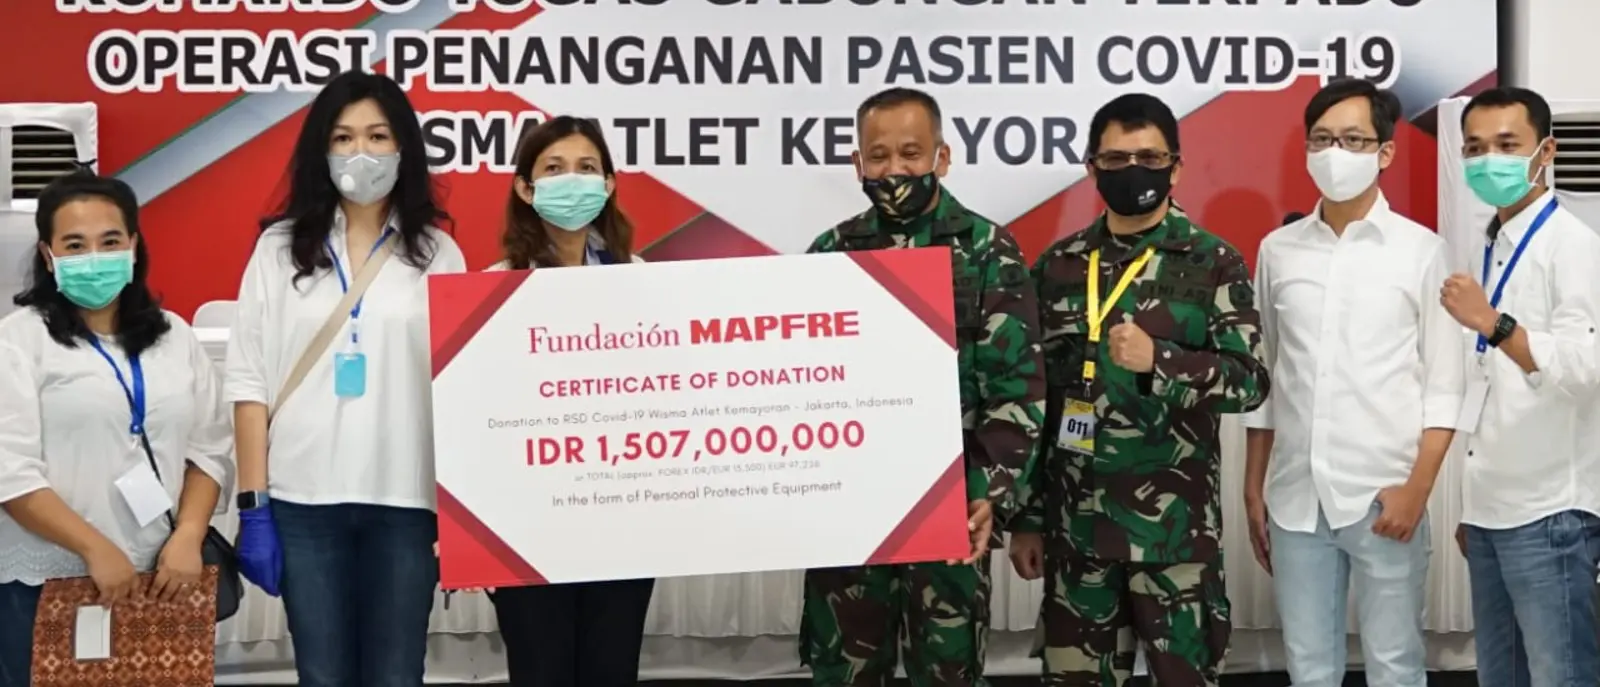 Indonésia: doamos equipamentos para proteger médicos e profissionais de saúde no Hospital Wisma Atlet Kemayoran